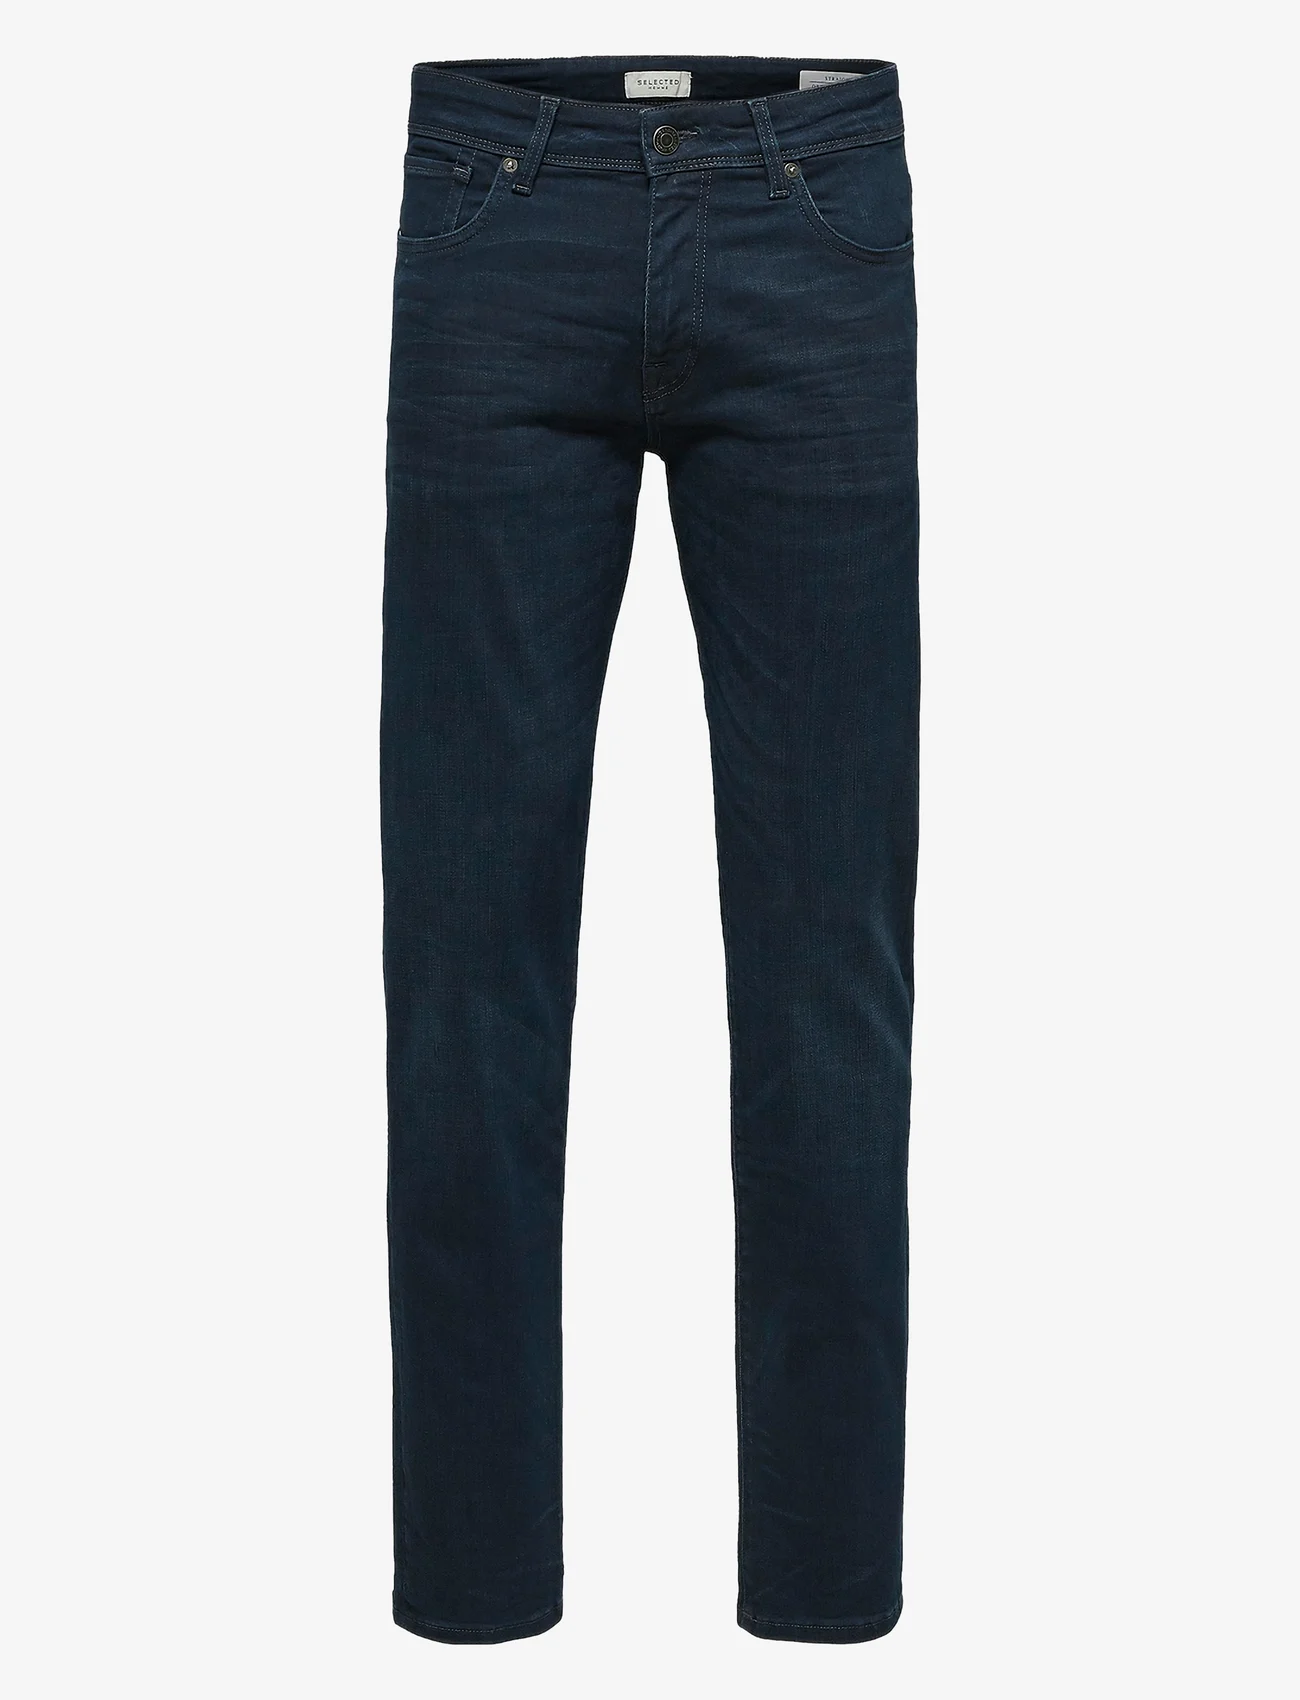 Selected Homme - SLH196-STRAIGHT SCOTT 6155 BB JNS NOOS - regular jeans - blue black denim - 0